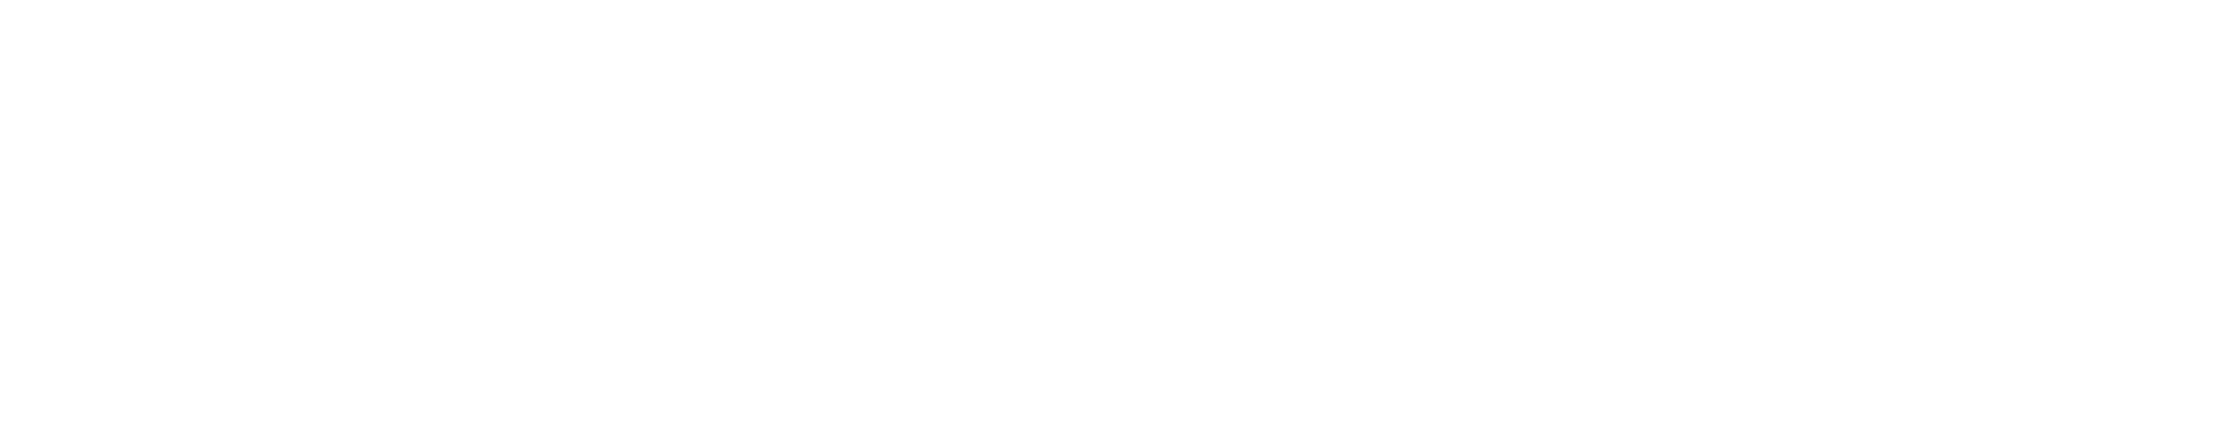 BERNWARD RAUCHBACH